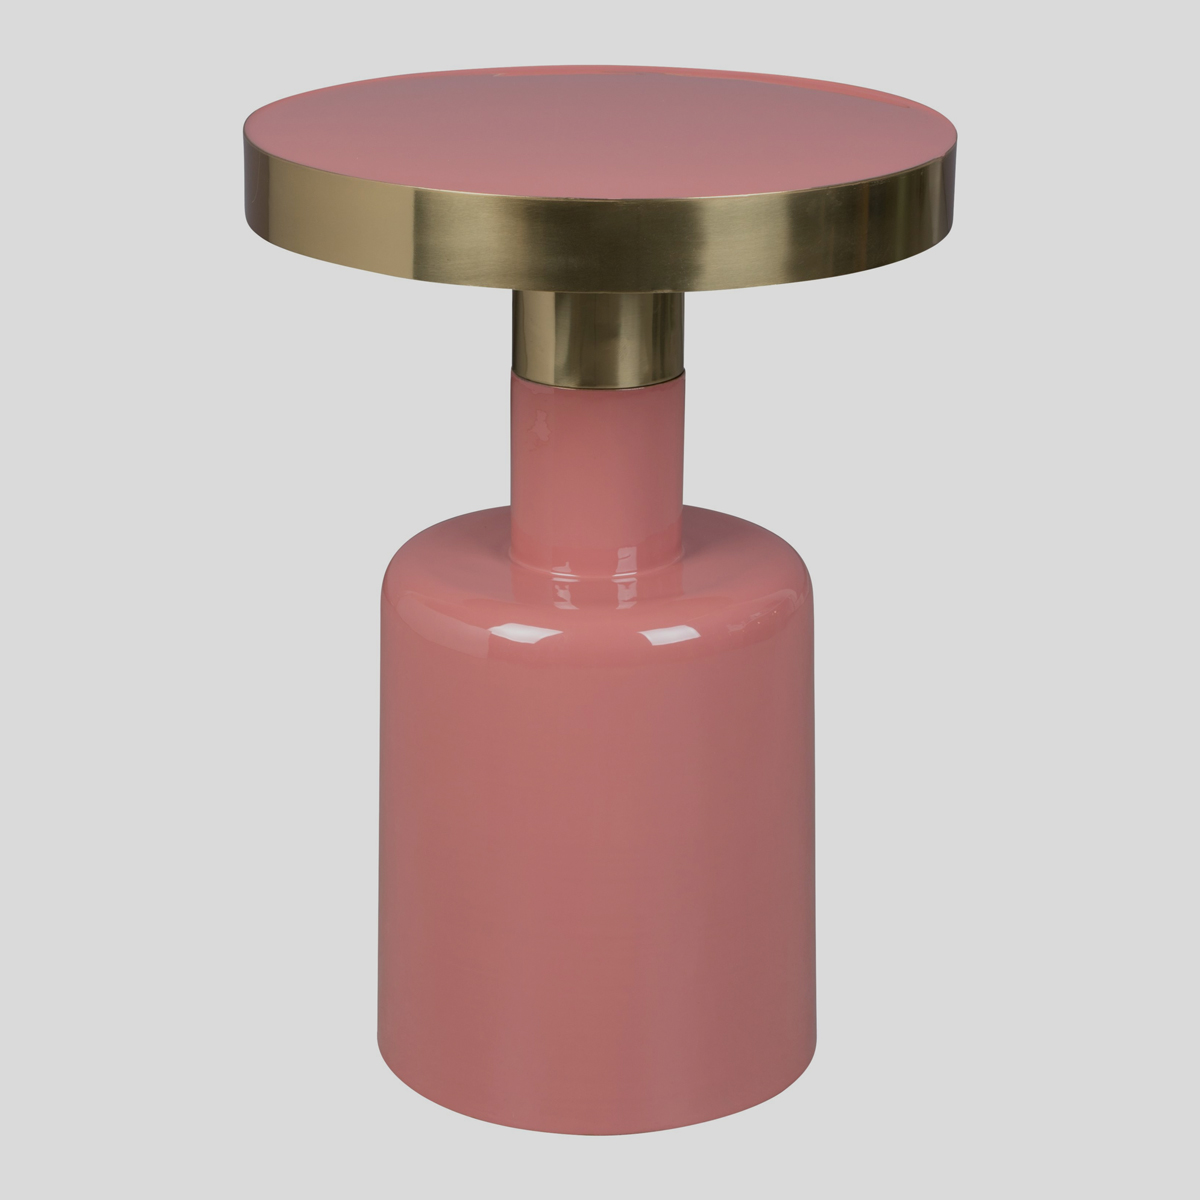 De kleurencombinatie roze met goud bij deze hoge bijzettafel van Zuiver is om van te smullen! 